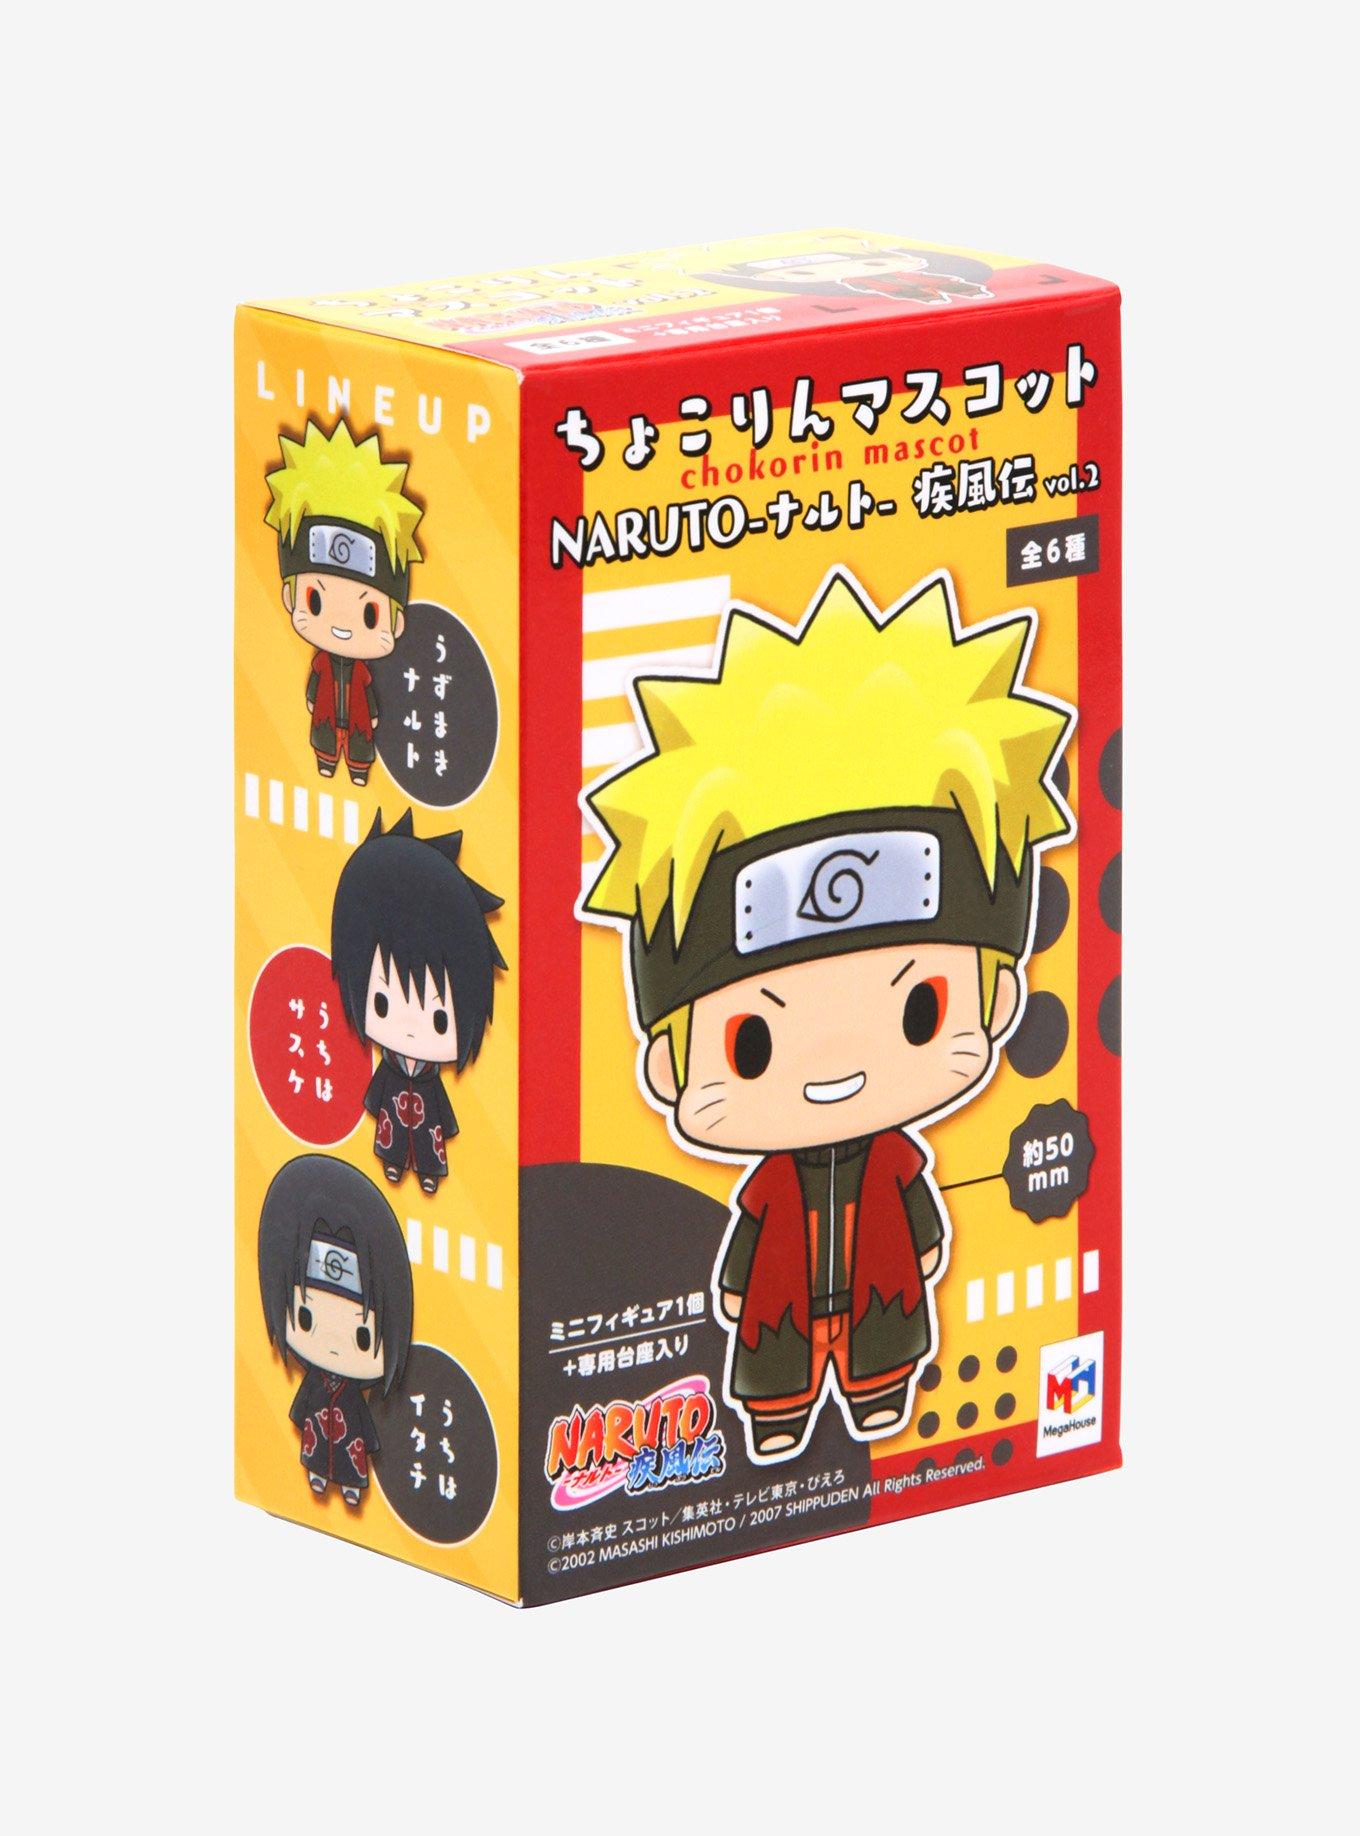 Naruto Shippuden Chokorin Mascot Vol. 2 Blind Box Mini Figure, , alternate